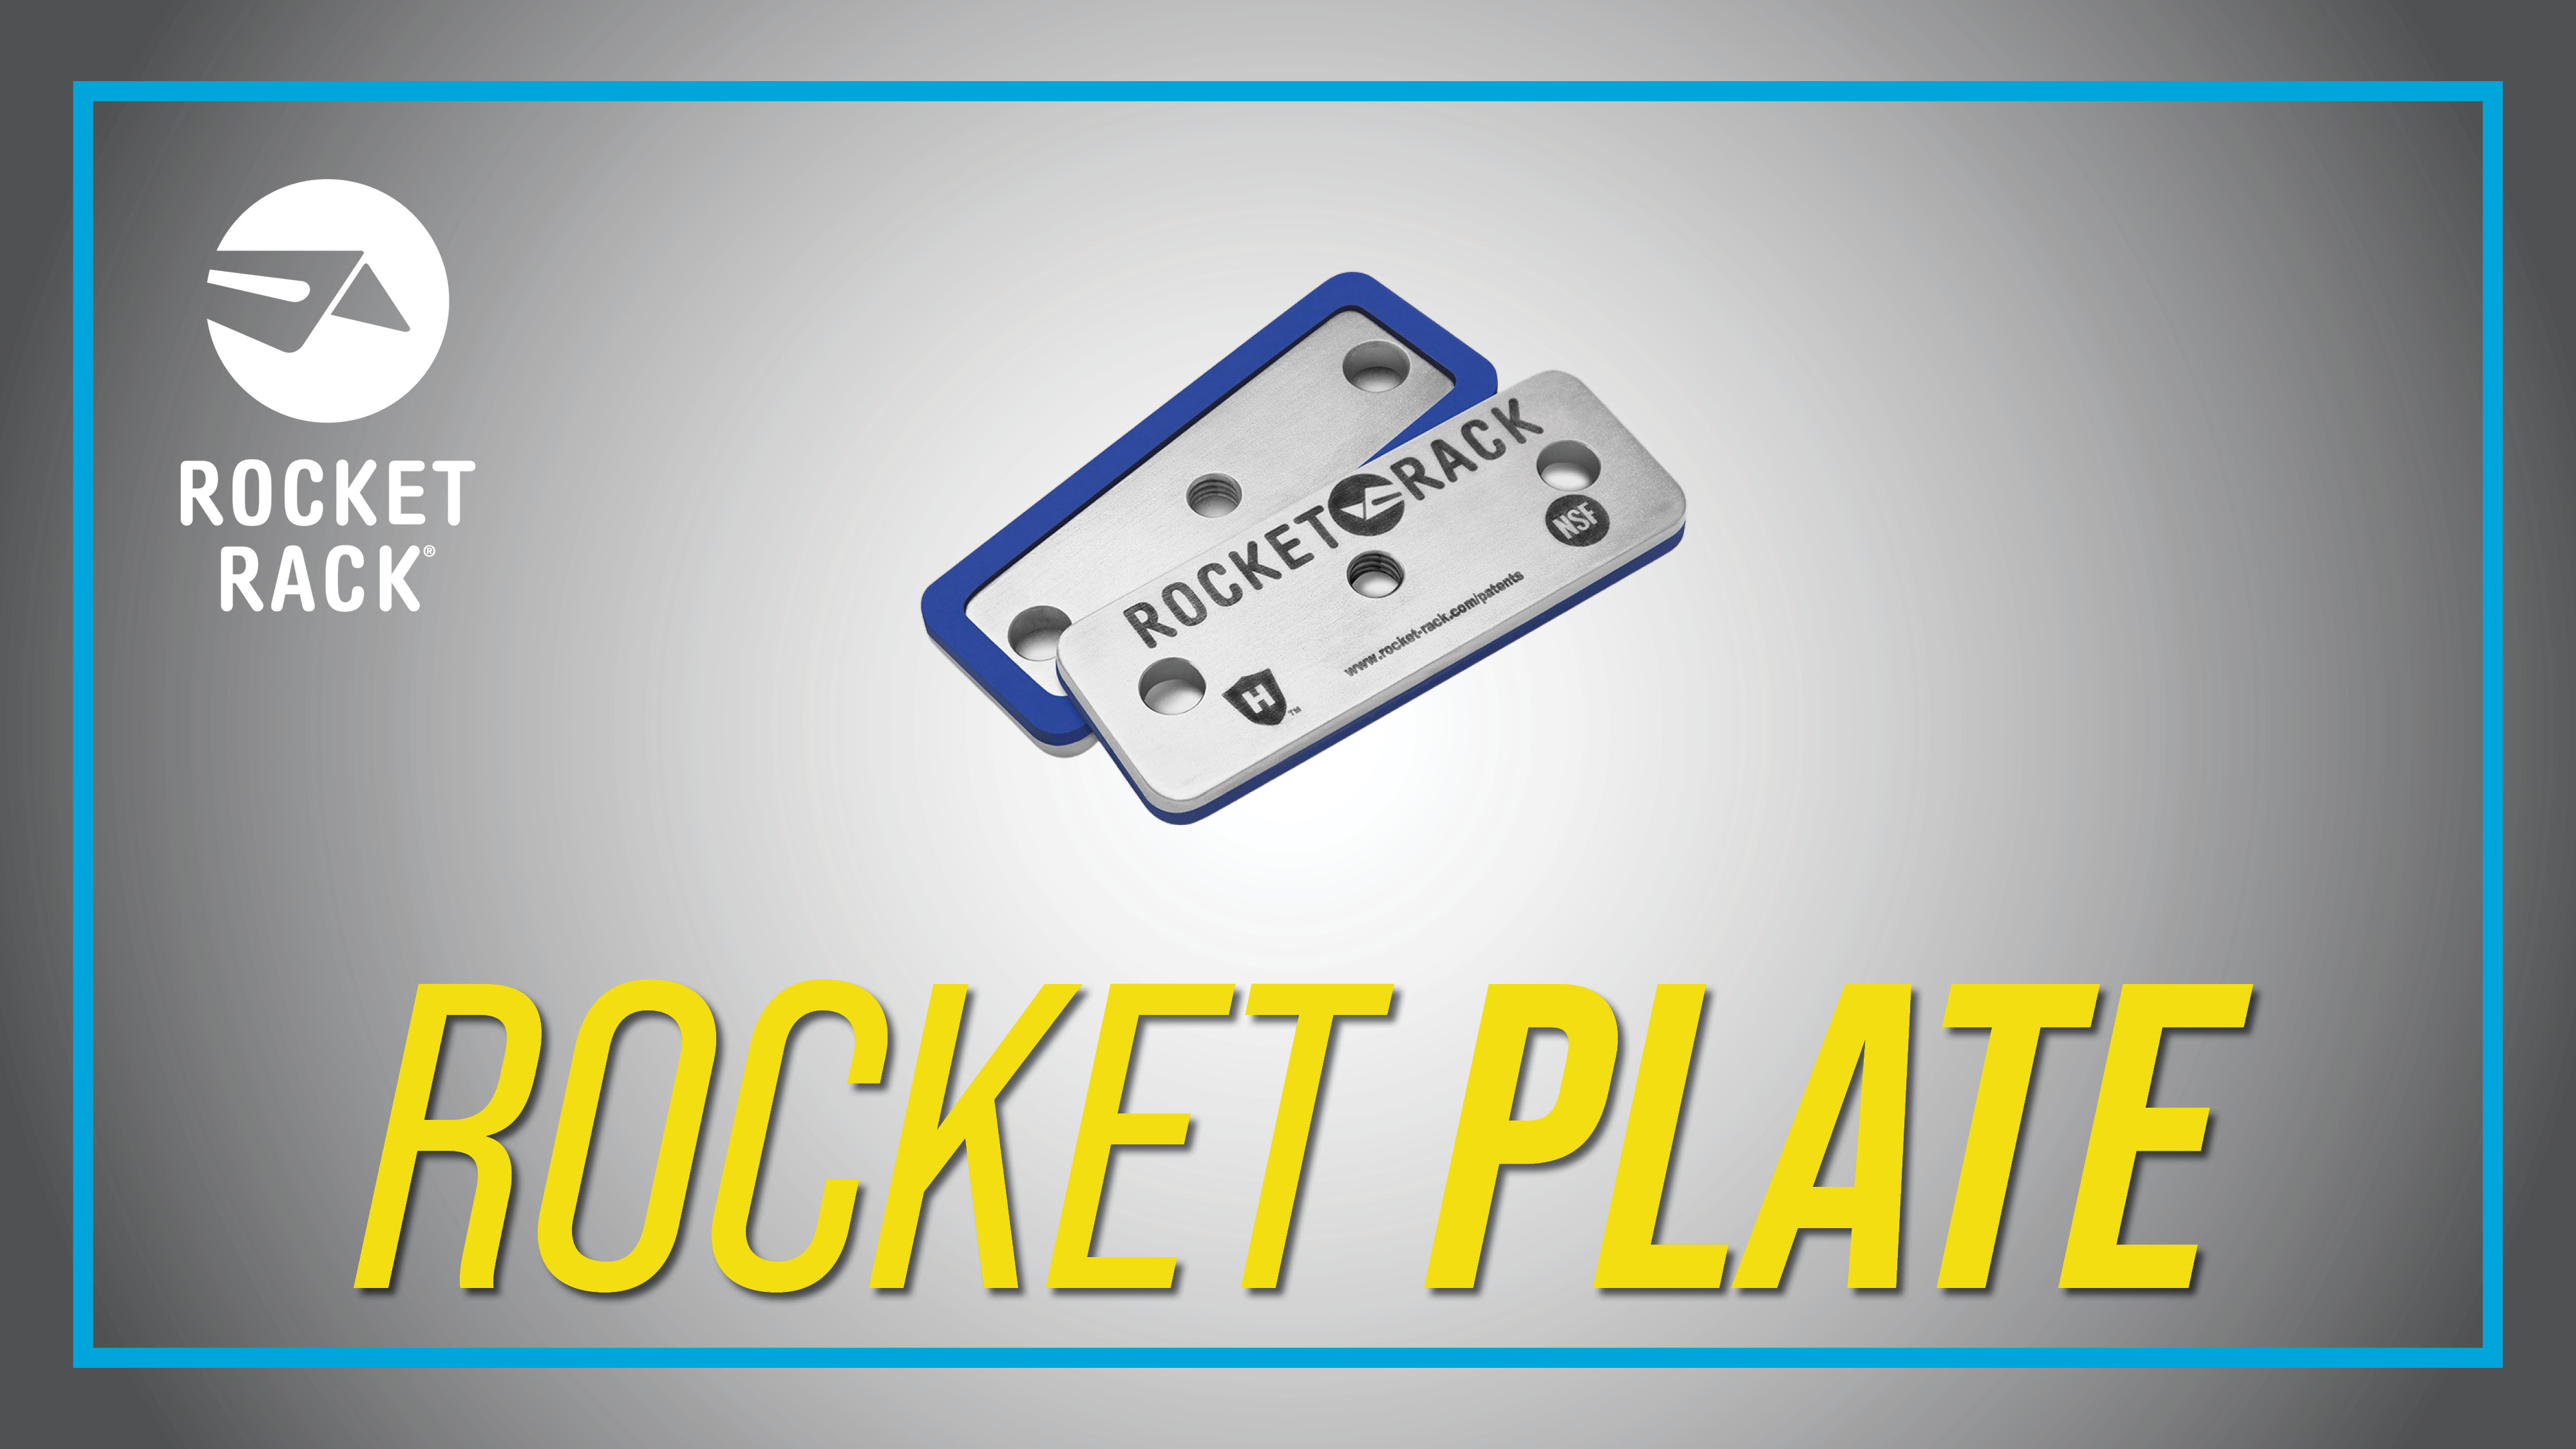 Rocket Plate by Rocket Rack